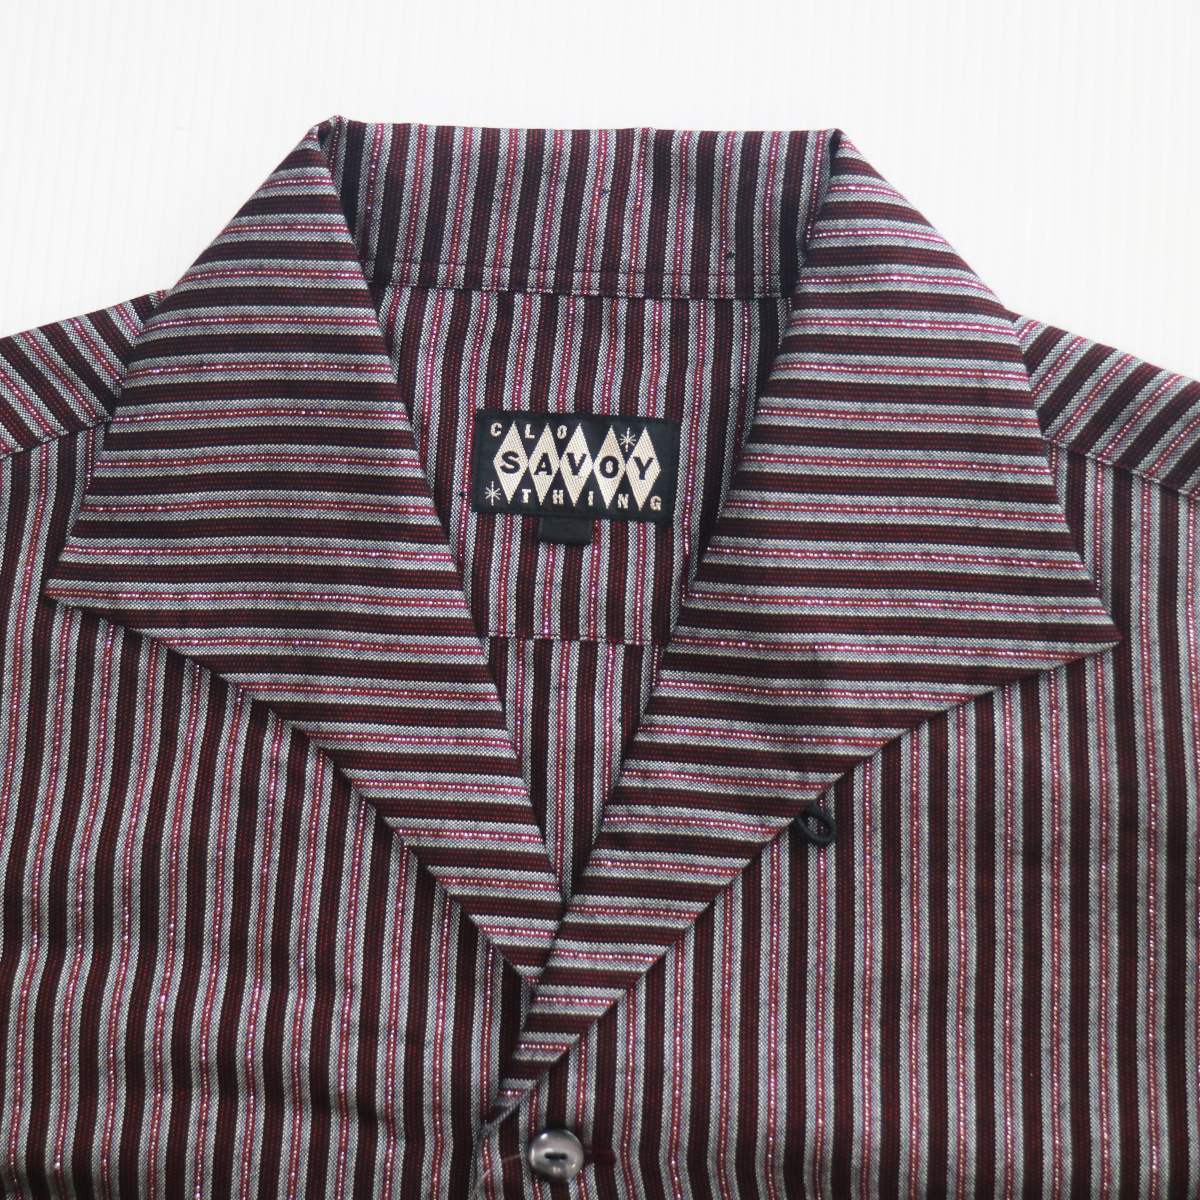 シャツ 長袖 メンズ ロカビリーファッション Lame Stripe Italian Shirts サイズXL ブランド SAVOY CLOTHING_画像6